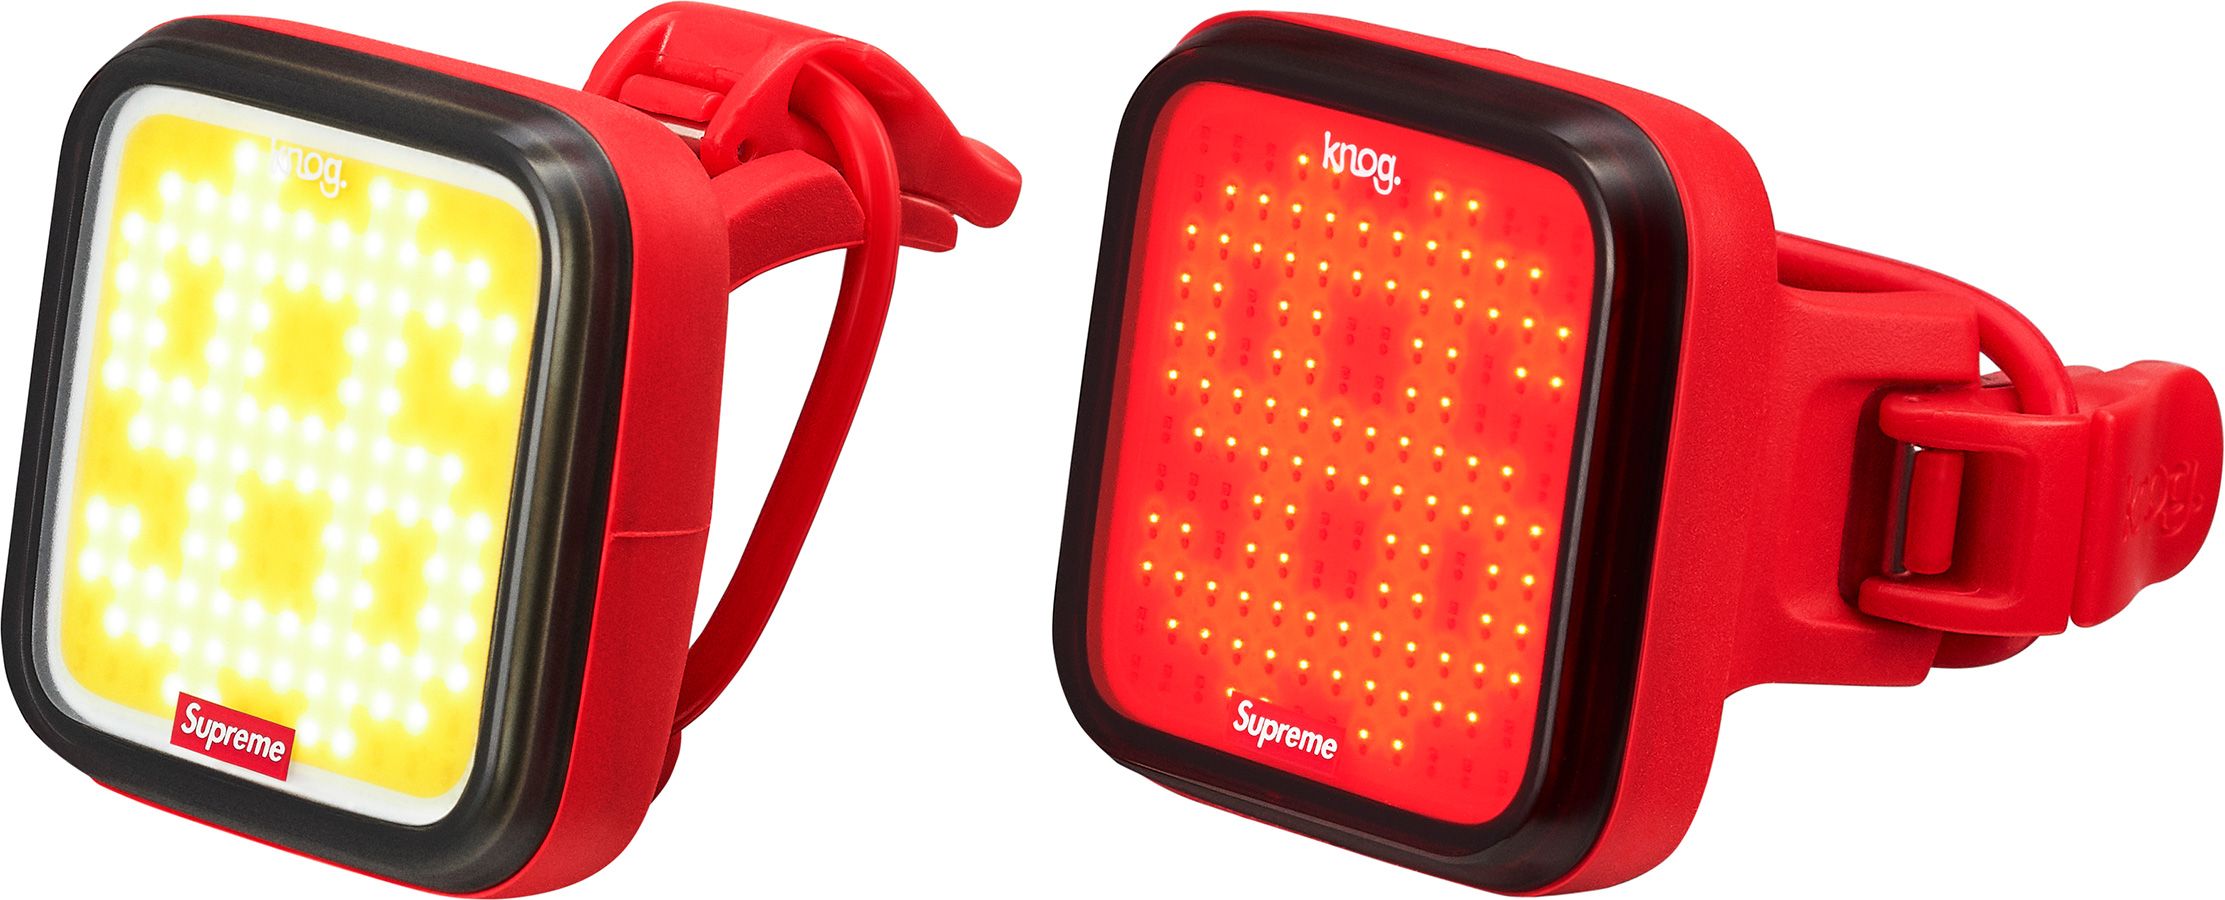 Supreme®/Knog Blinder Bicycle Lights (Set of 2) - Fall/Winter 2021